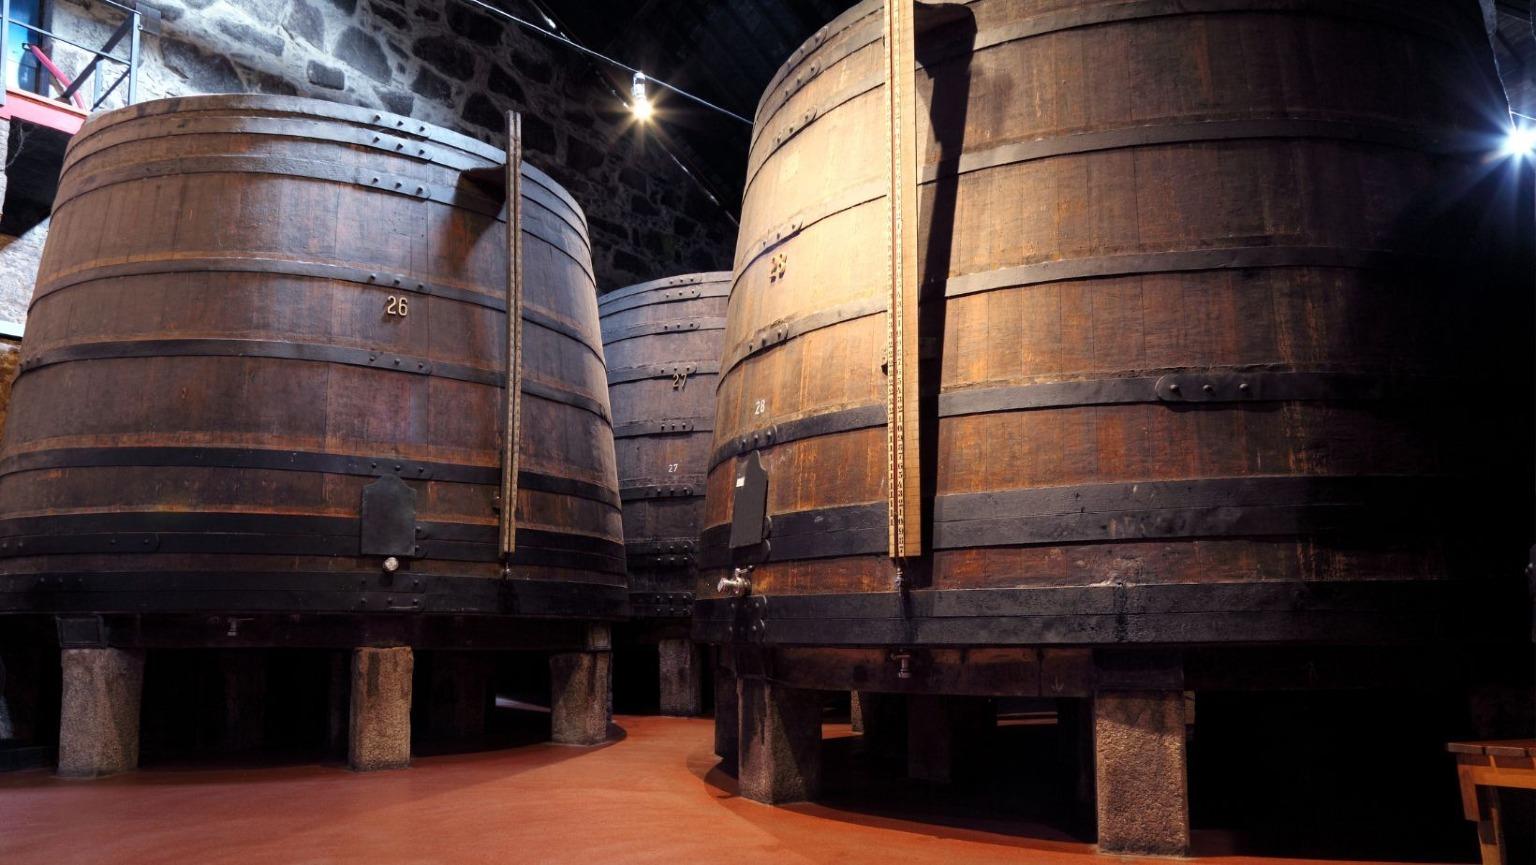 Barris de vinho do Porto Ruby. Durante uma visita a uma cave de vinhos, Porto, Portugal. Do Douro ao Porto, o Vinho do Porto está a envelhecer em Vila Nova de Gaia.